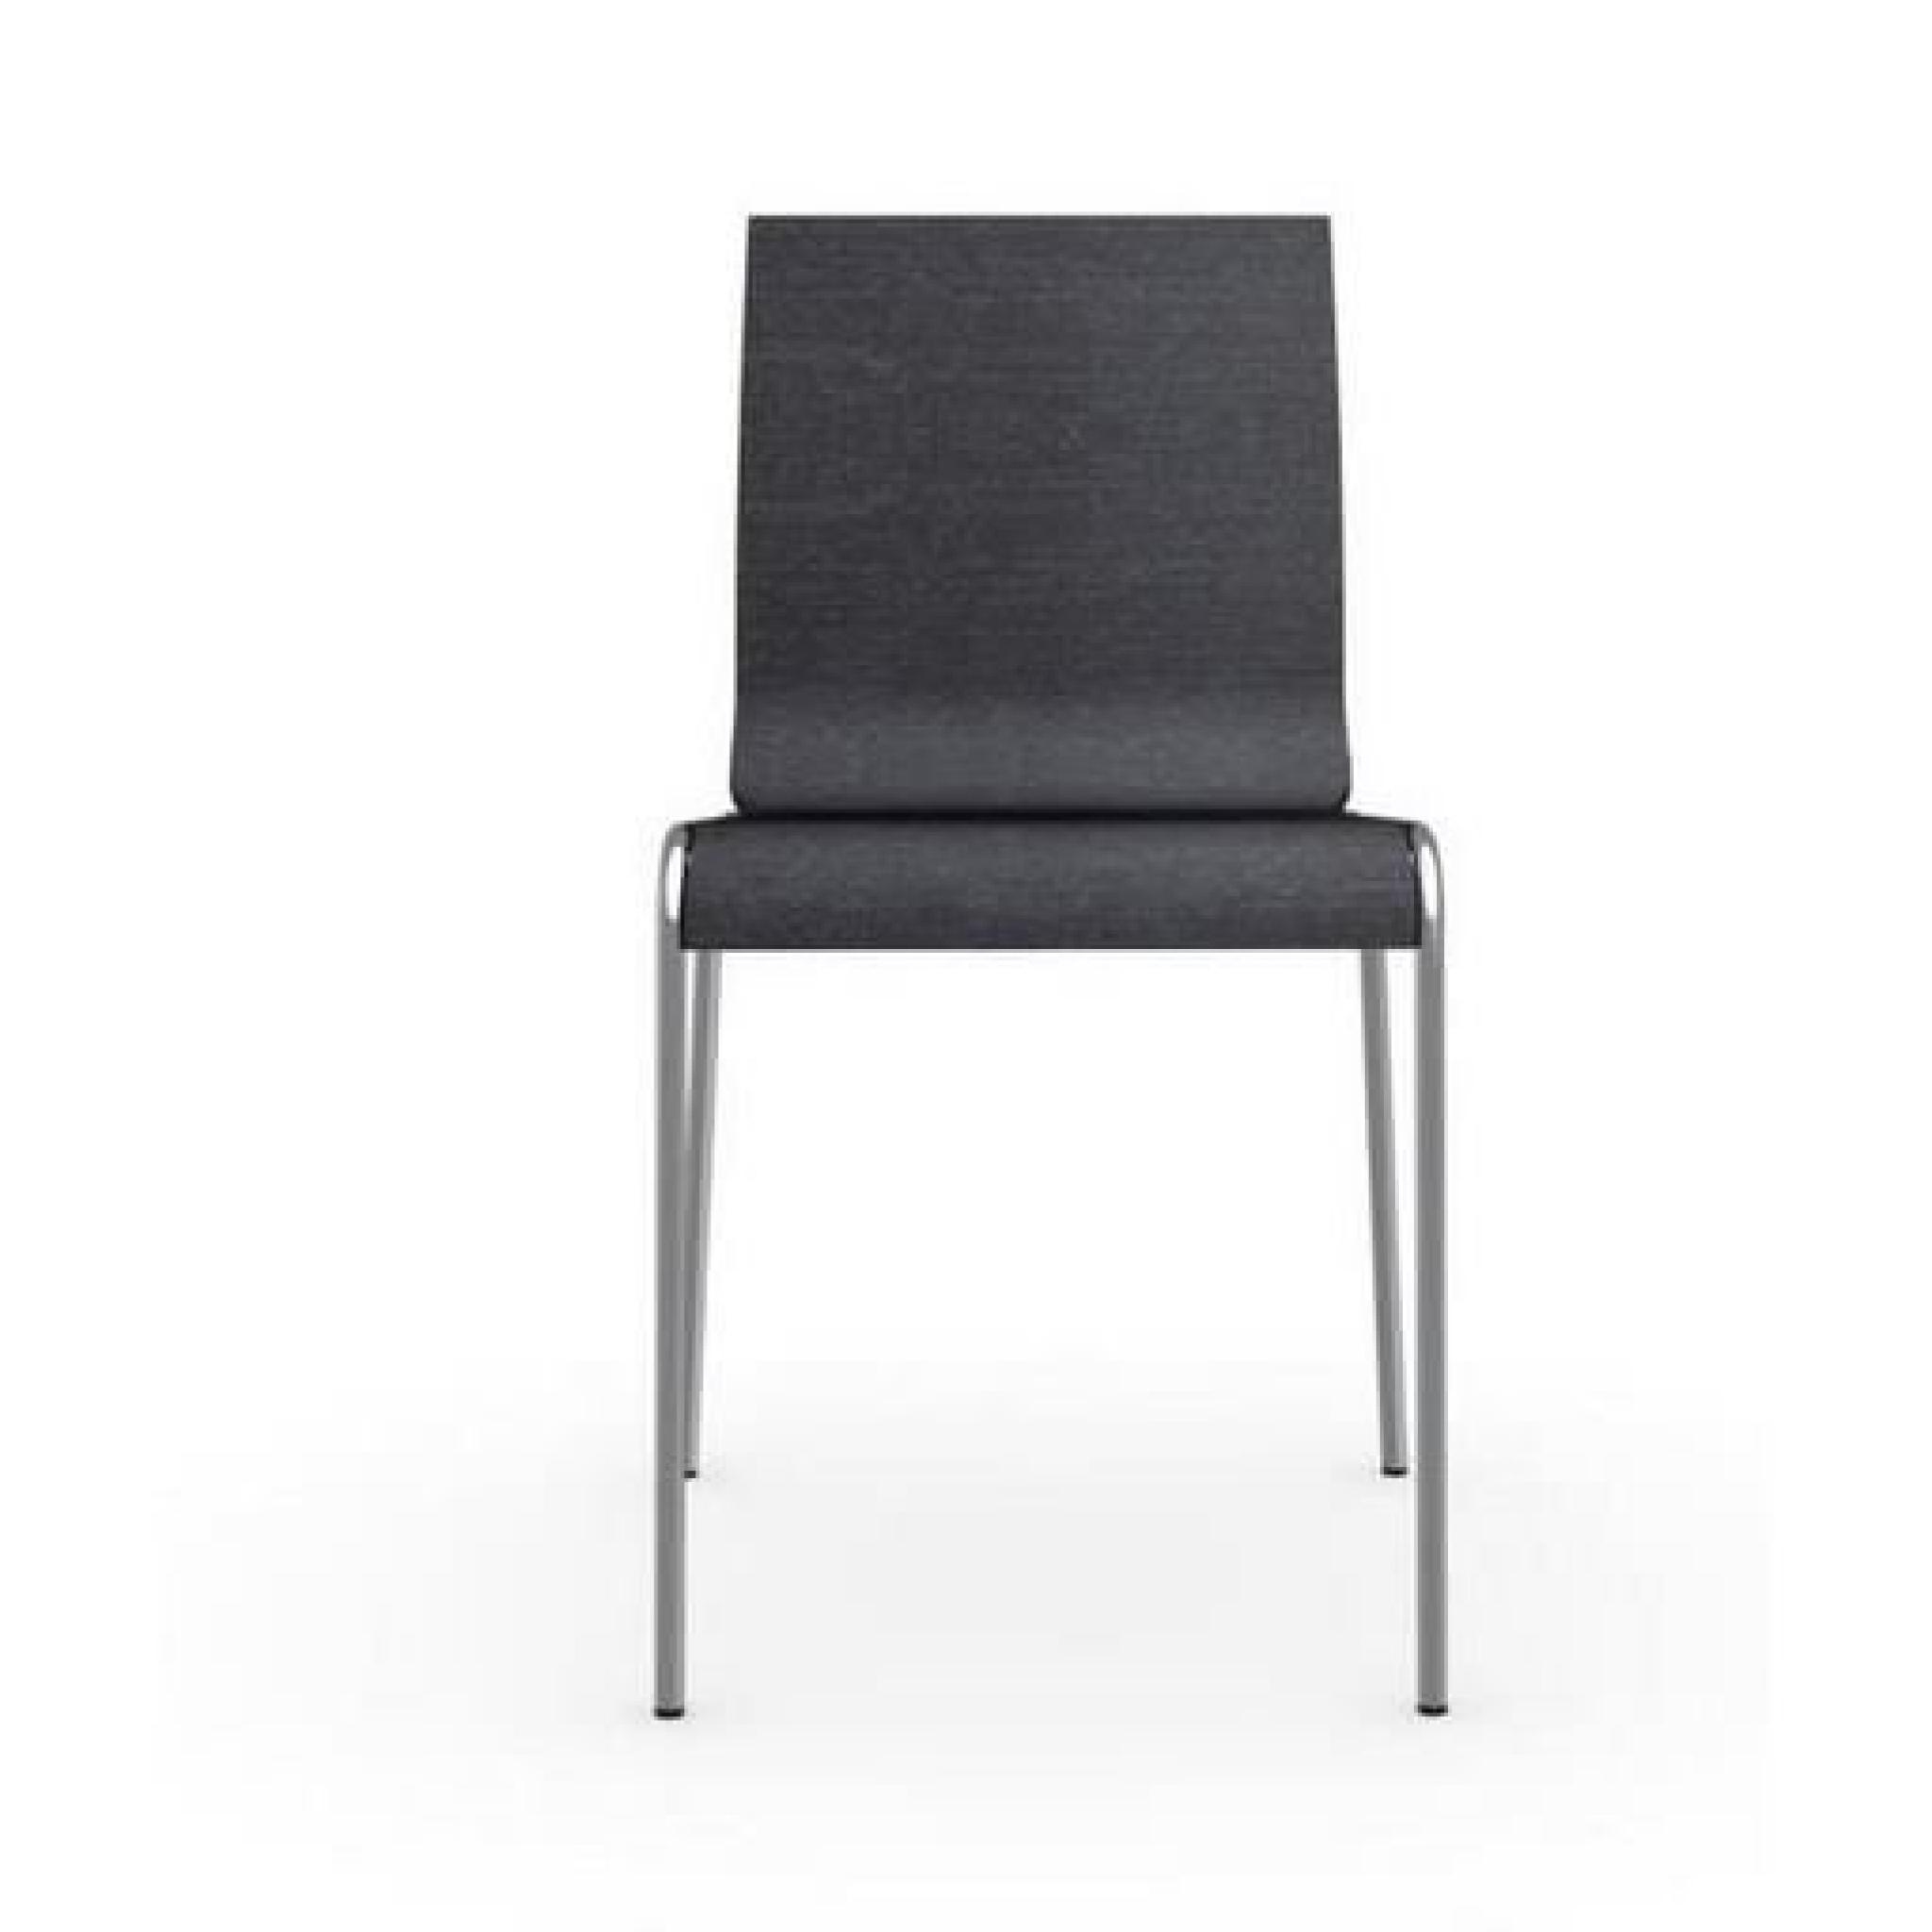 Chaise ONLINE gris graphite et acier chromé de calligaris pas cher